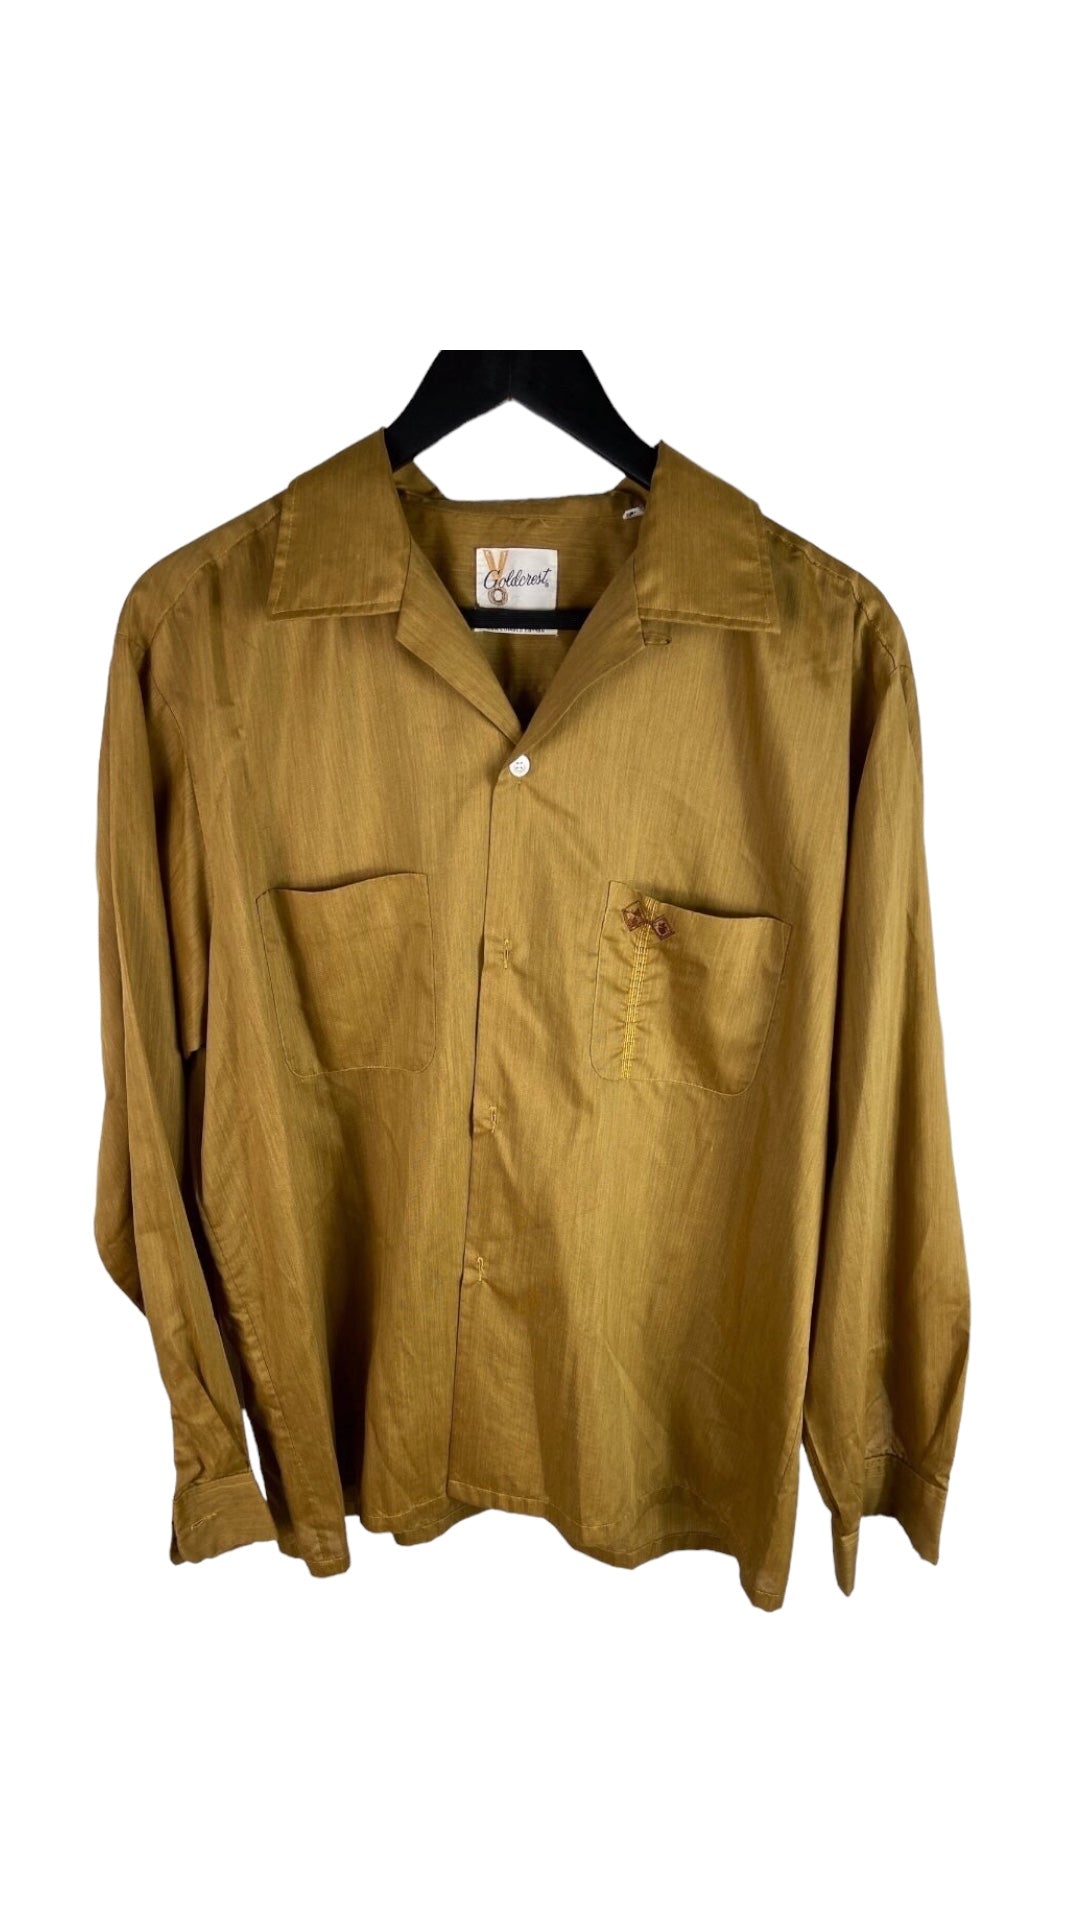 VTG 70s Golderest Gold Summer Button Down Shirt Sz XL